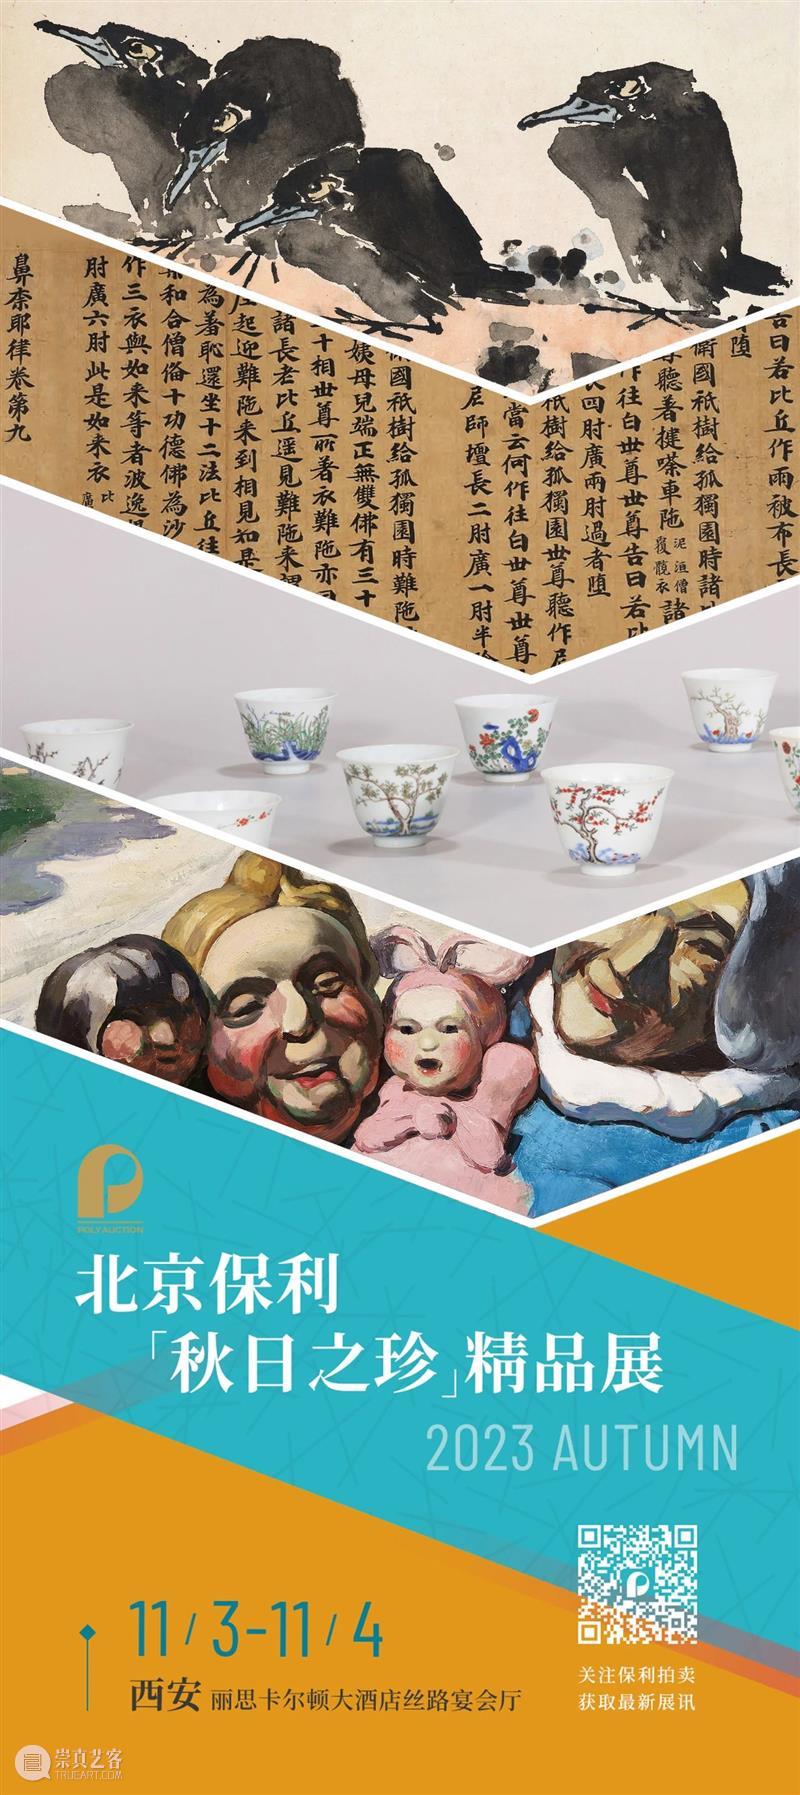 北京保利拍卖丨“秋日之珍”精品展今日西安亮相 崇真艺客